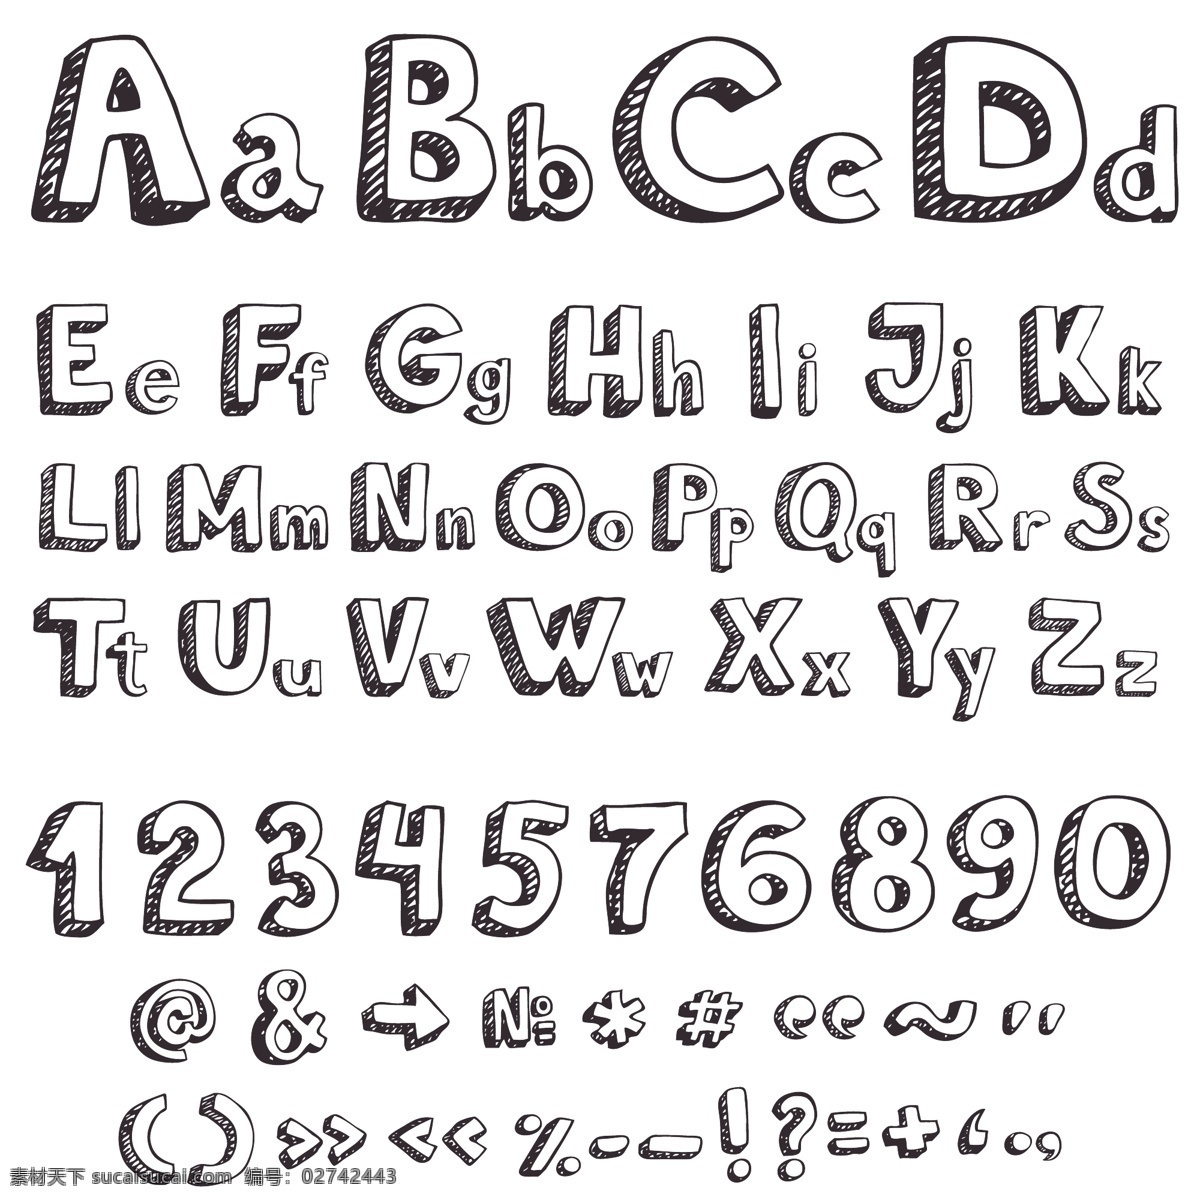 3d 粉笔 符号 蜡笔 立体 其他设计 手绘 英文 字体 矢量 模板下载 阴影 手写 涂鸦 字母 矢量图 艺术字